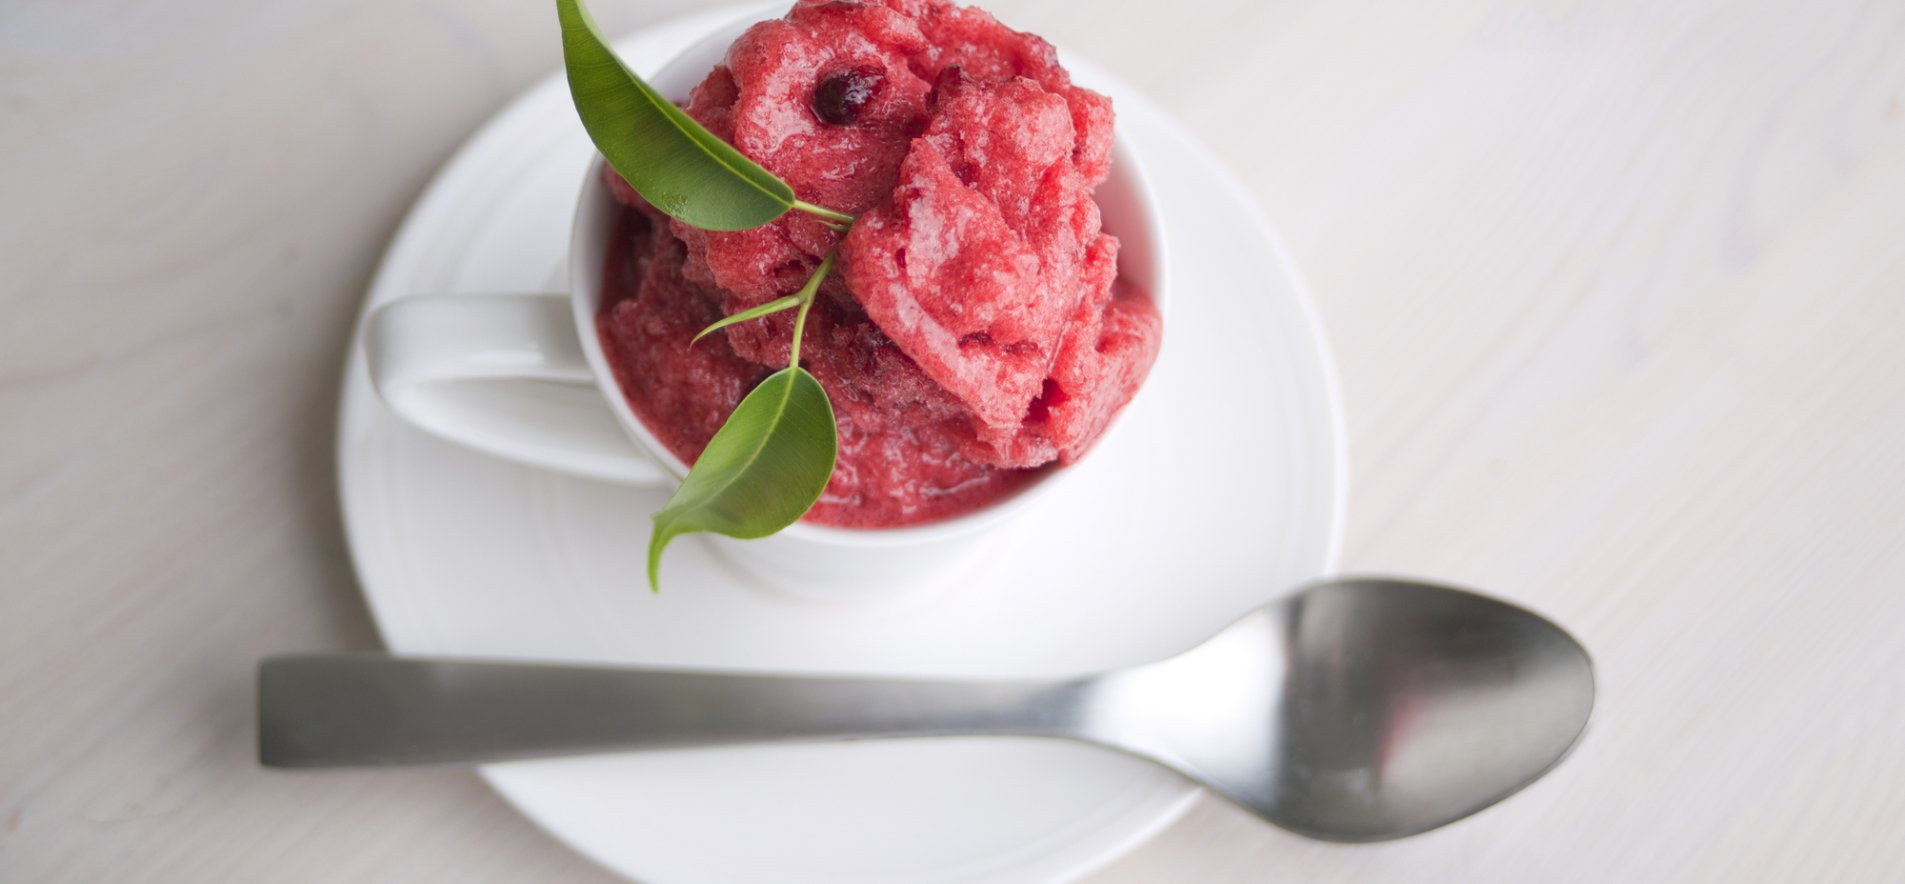 Кремолато — самый простой итальянский десерт из 2-х ингредиентов